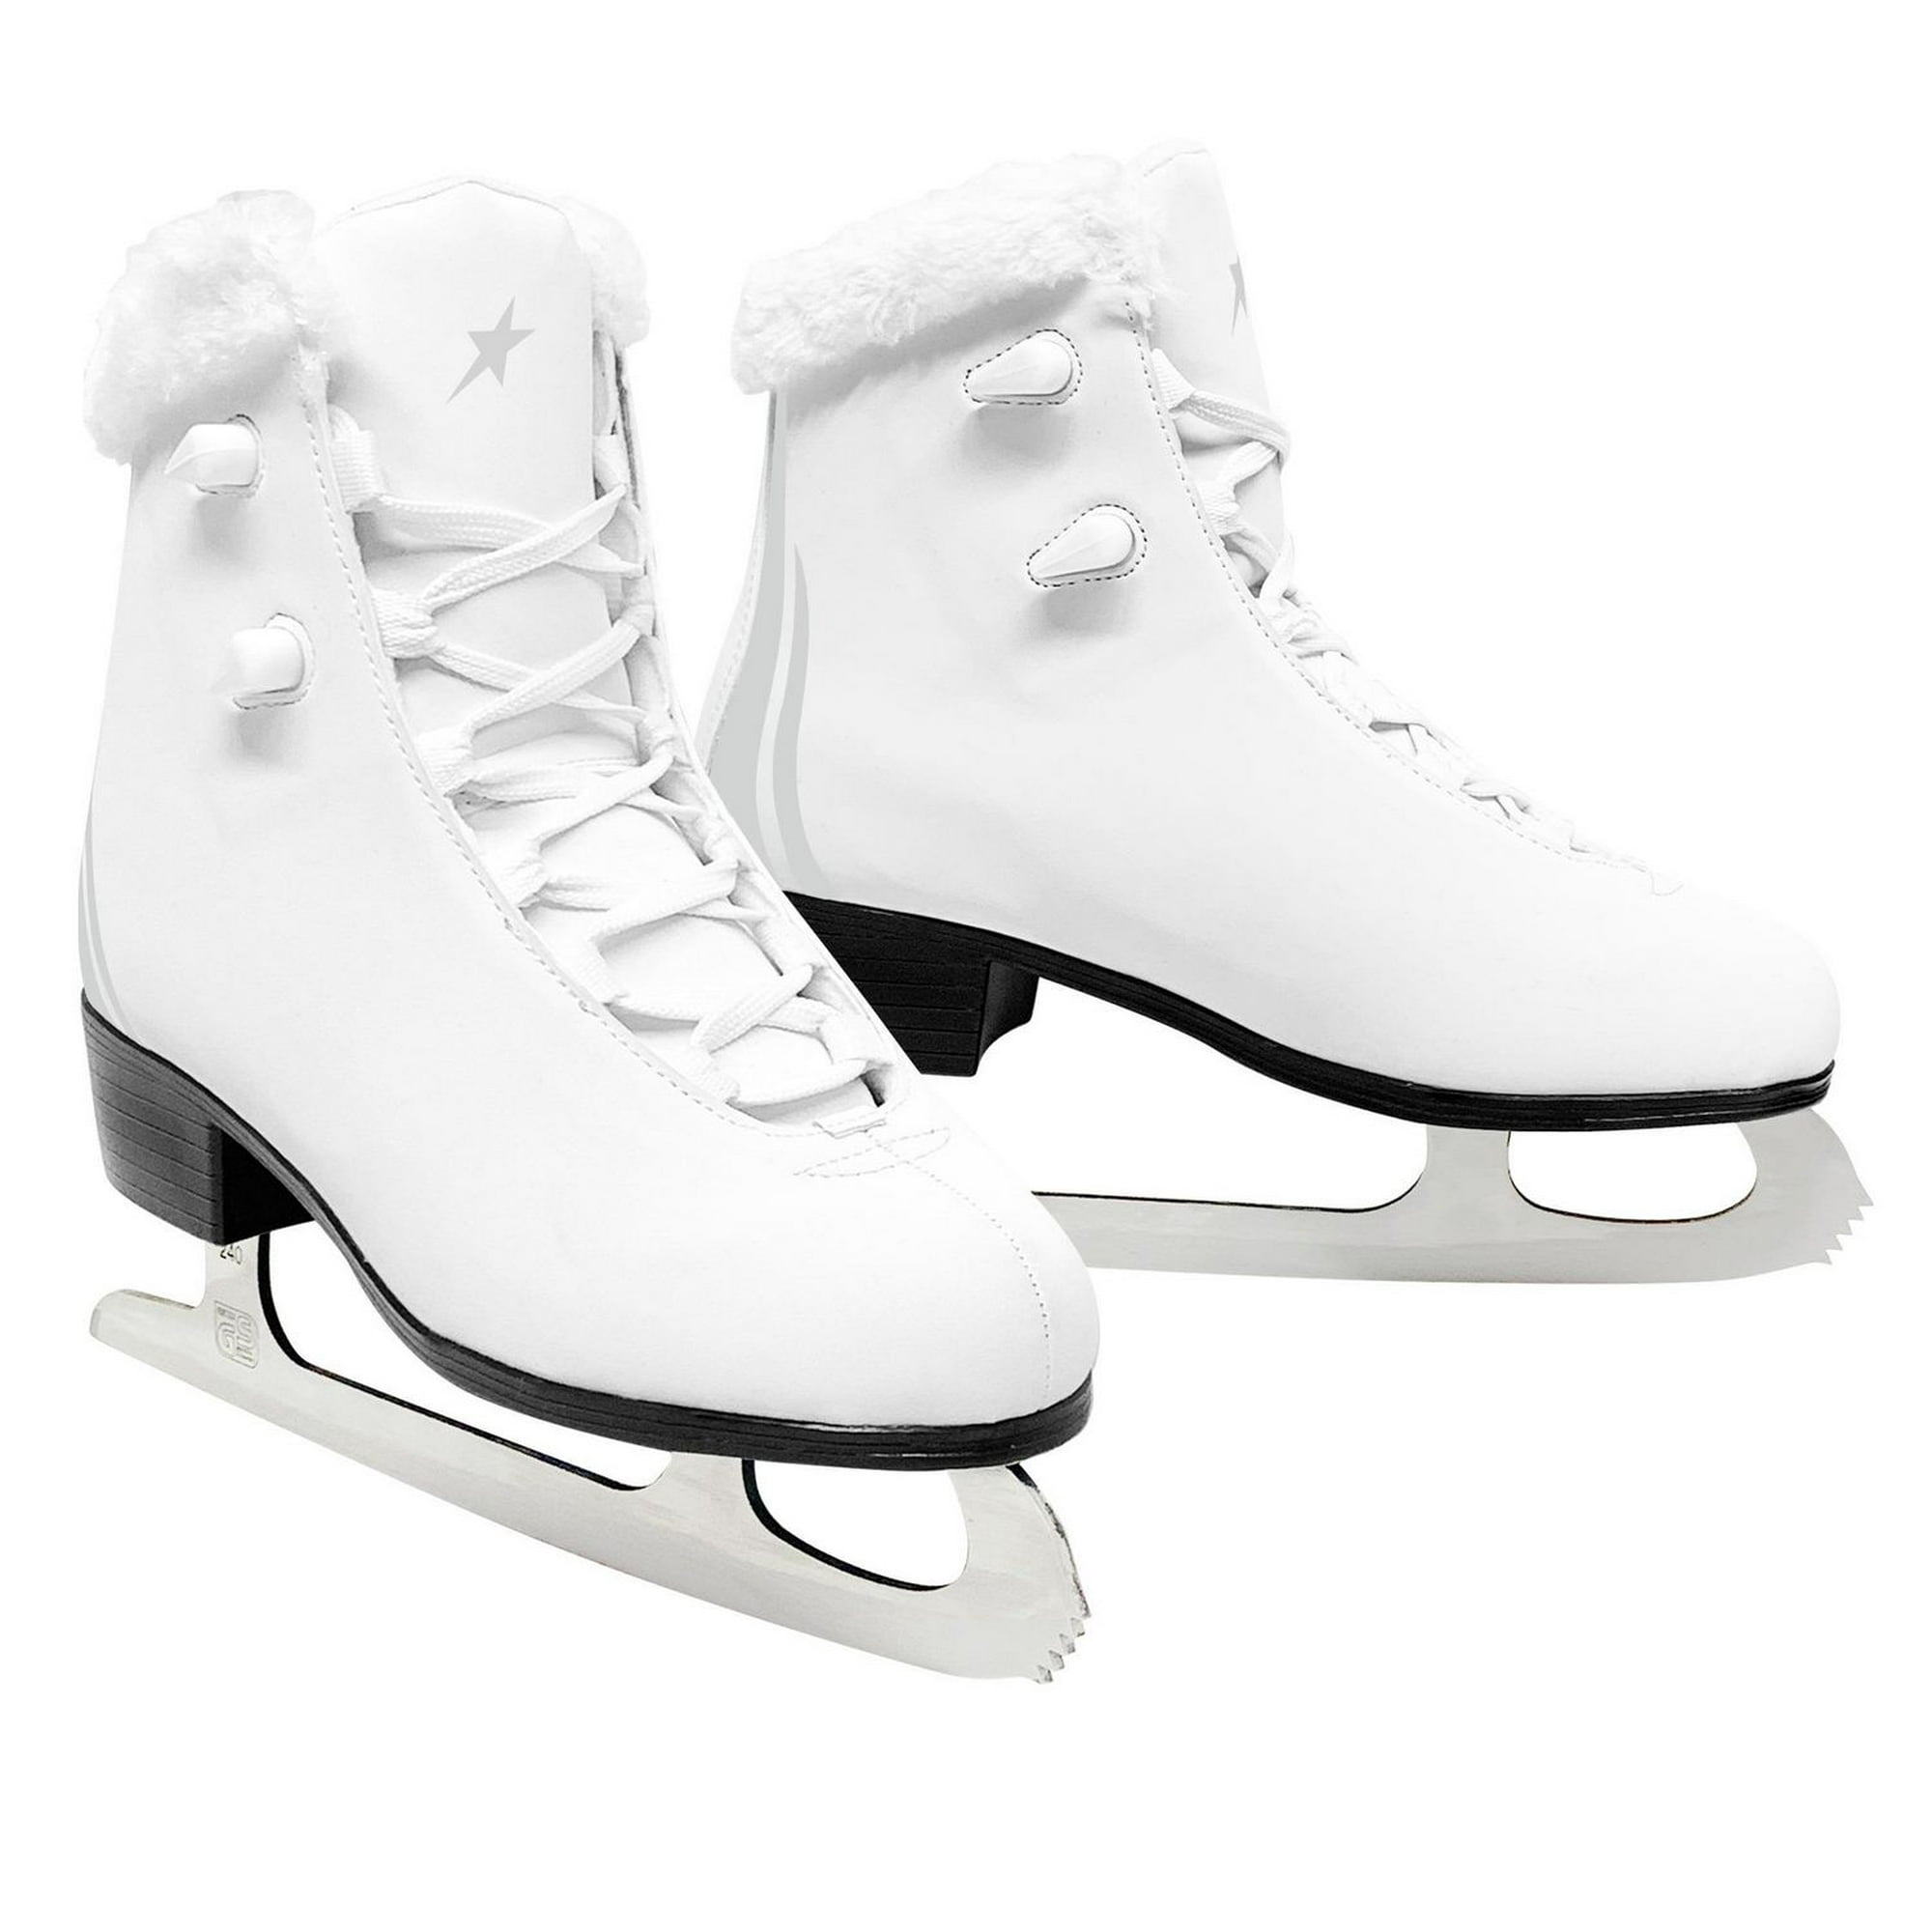 FS Figure Skates - White - Size 8 